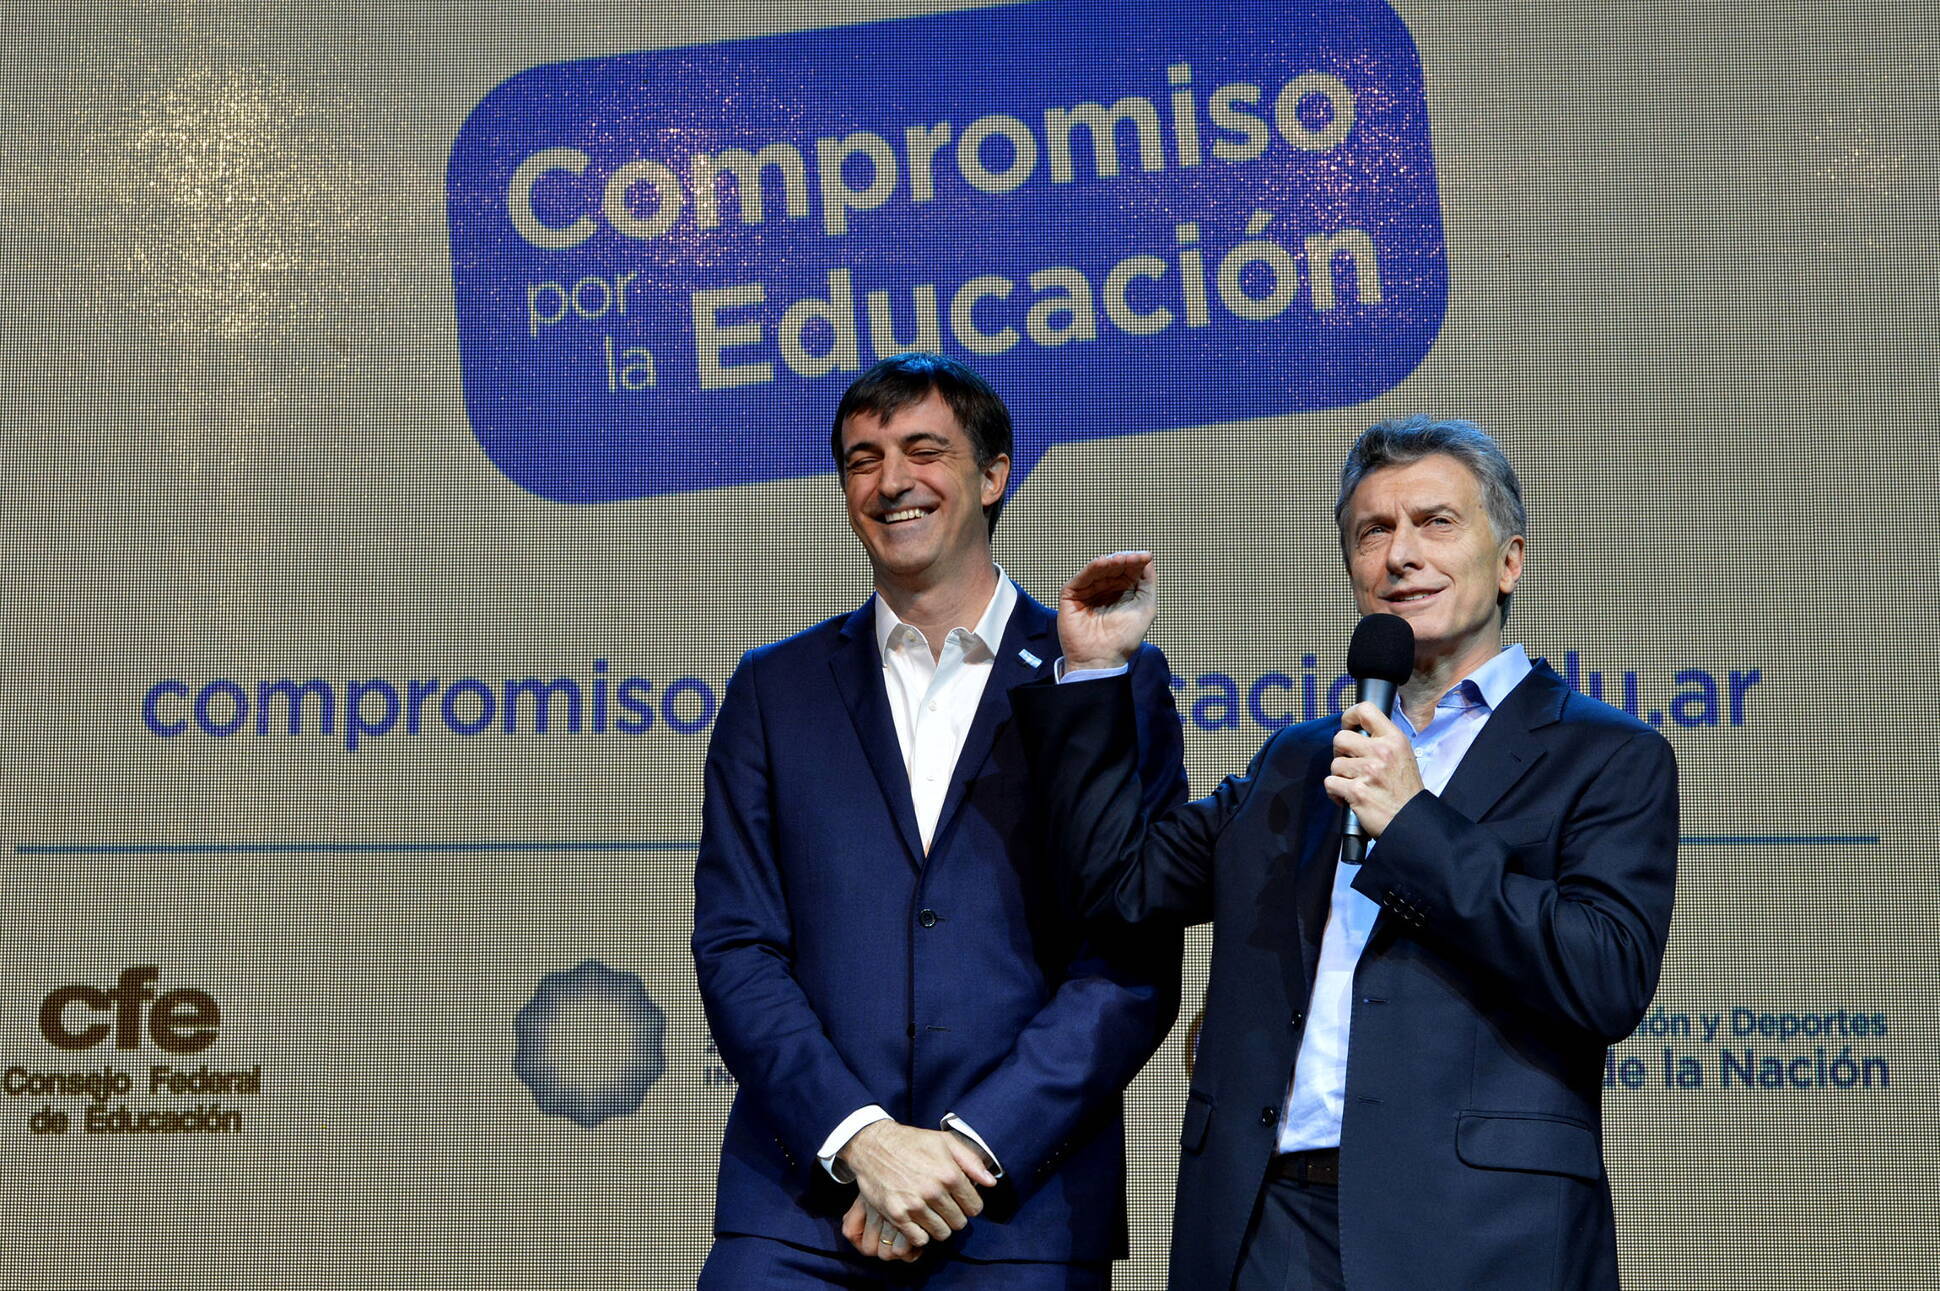 El presidente Macri encabezó el lanzamiento de la iniciativa Compromiso por la Educación